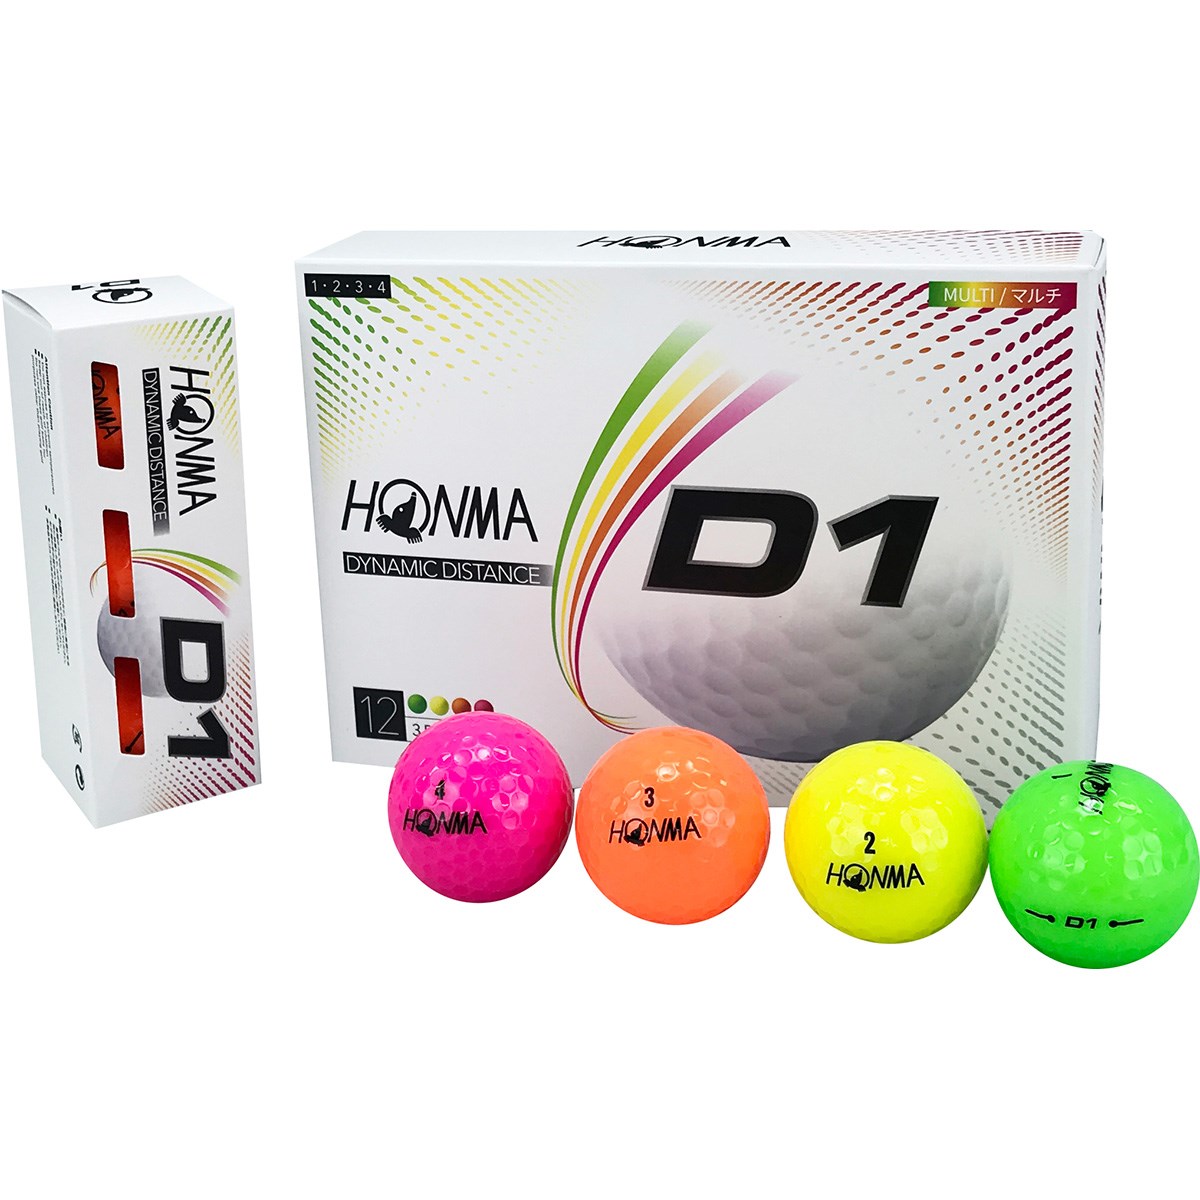 本間ゴルフ HONMA D1 ボール 2020年モデル 5ダースセット 5ダース(60個入り) マルチ